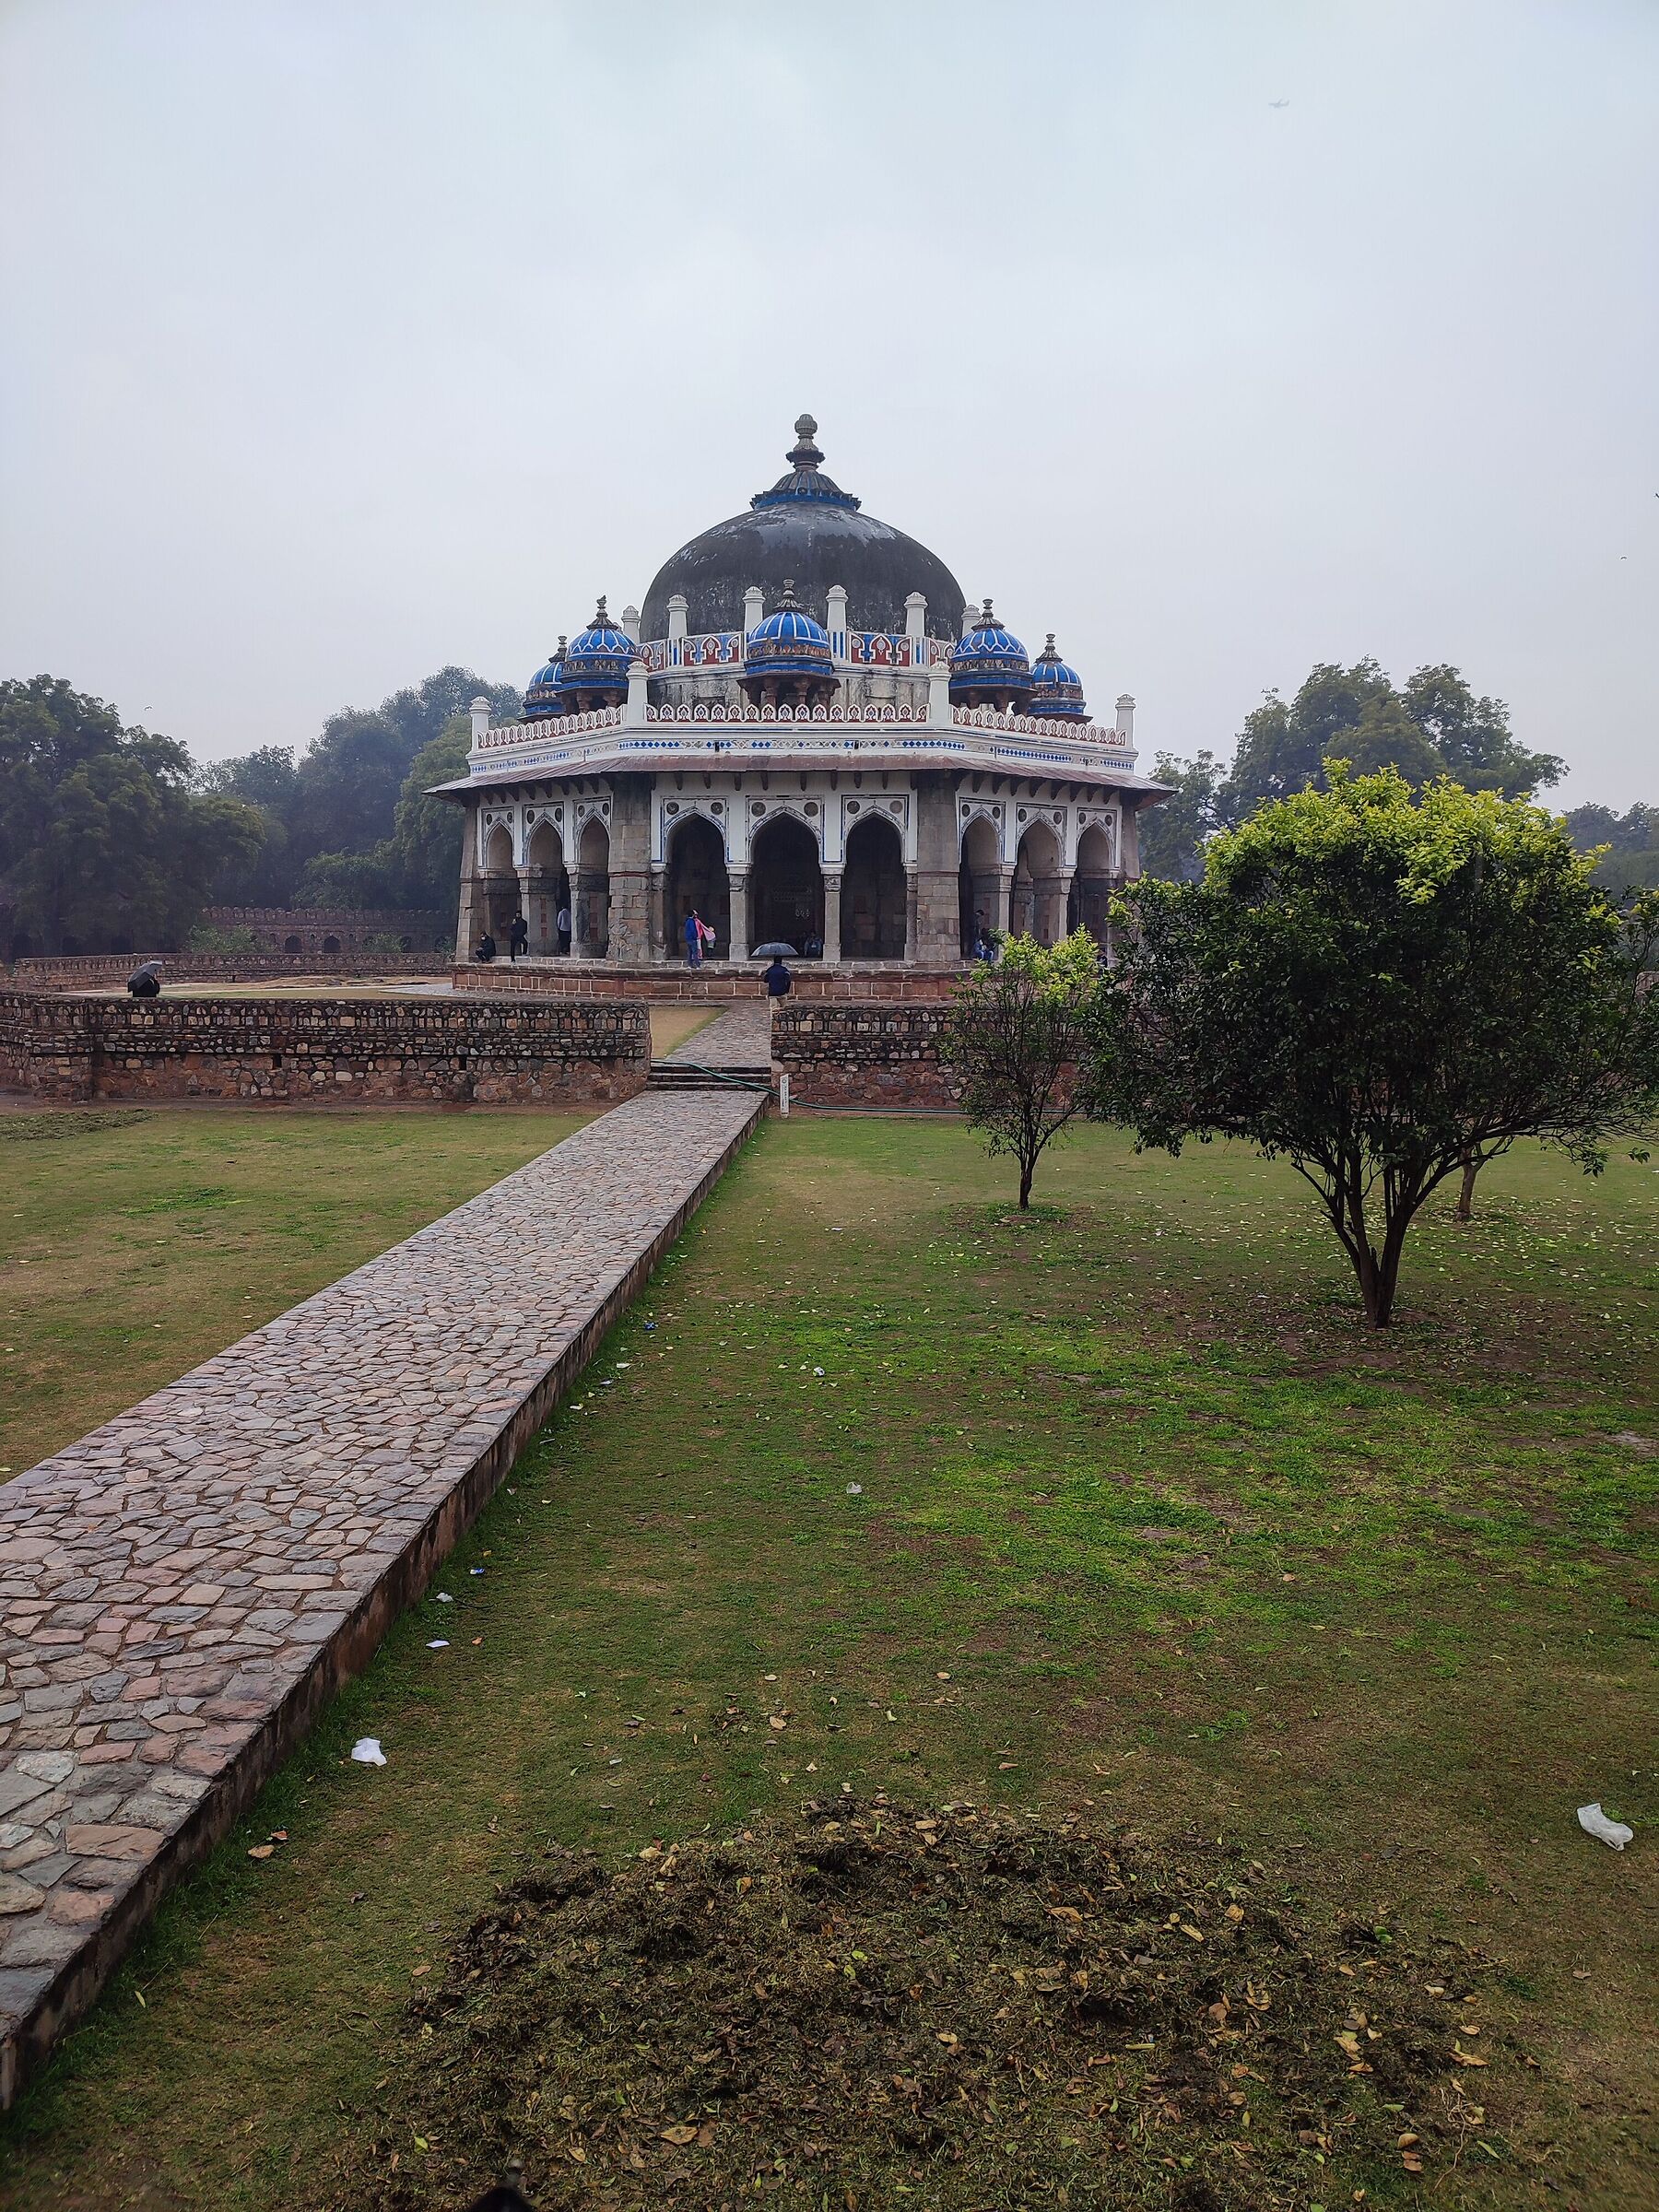 Isa Khan's garden tomb...